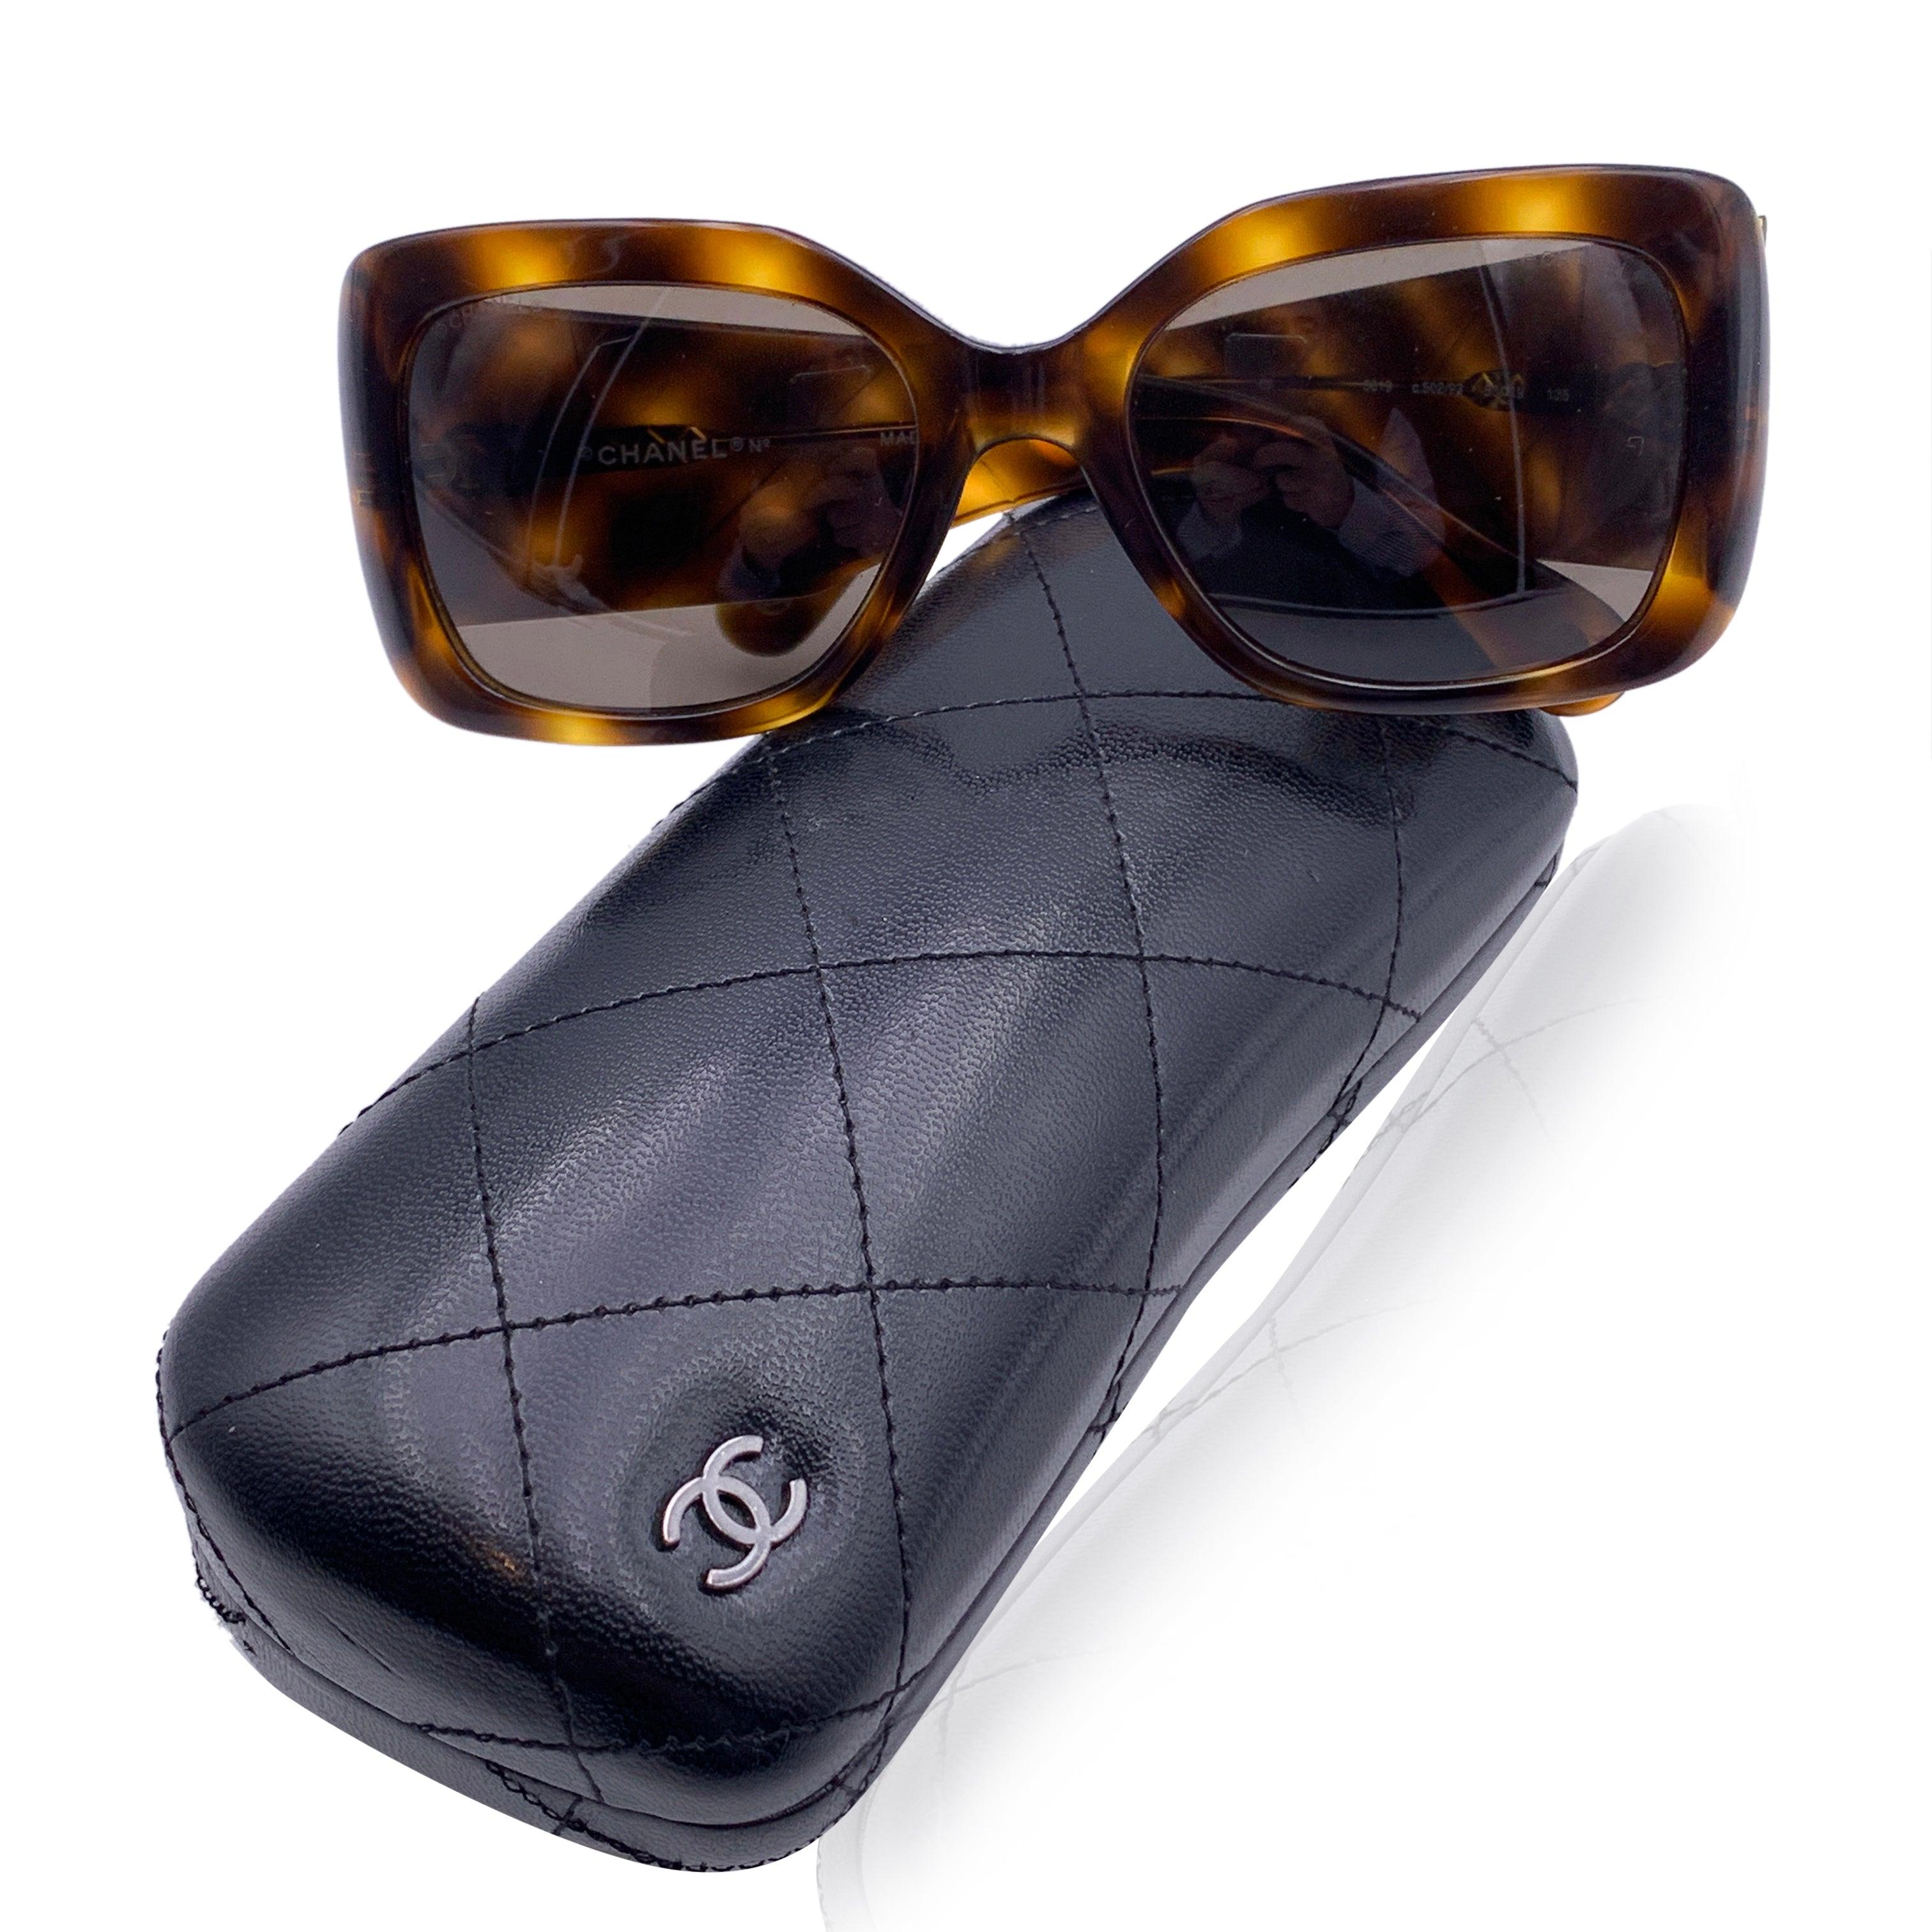 Chanel rechteckige Sonnenbrille mod. 5019 - c.502/93. Sie haben einen Rahmen aus braunem Schildpatt-Acetat. CC-Logo aus Goldmetall und Steppung an den Armen. Graue Linsen. Mod & refs.: mod. 5019- c.502/93 - 53/19 - 135. Hergestellt in Italien